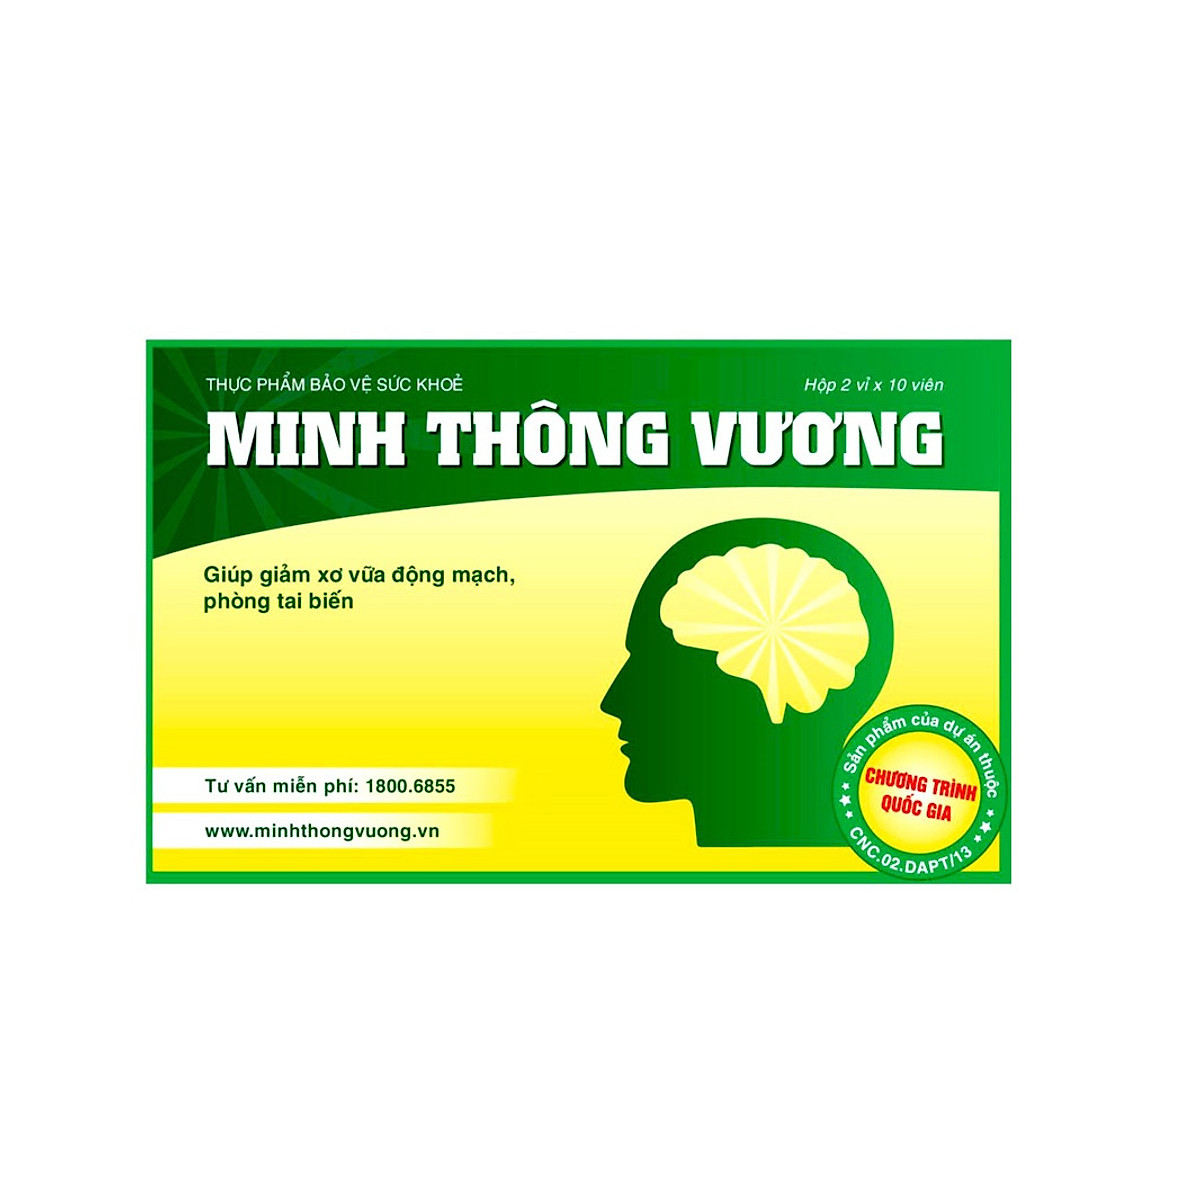 Minh thông vương - giá - mua o dau - tiệm thuốc - Trang web chính thức